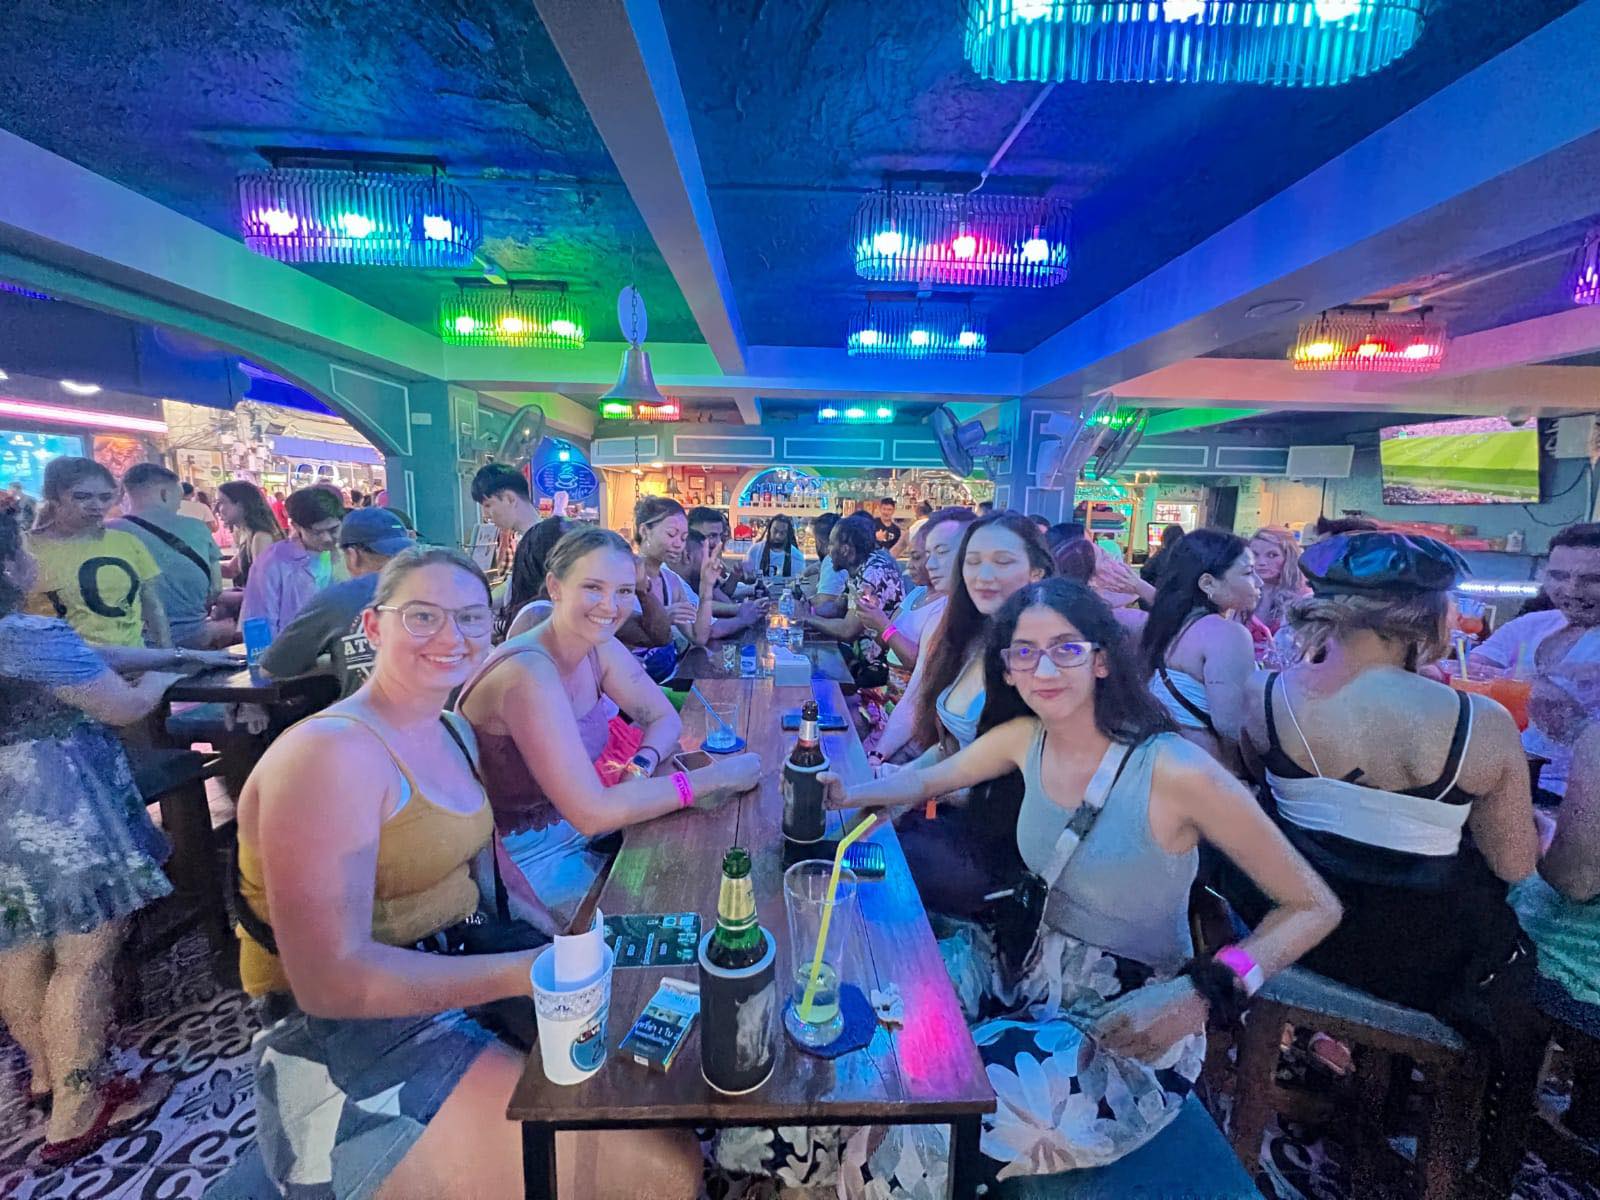 The Phuket Pub Crawl: Party Paradise!